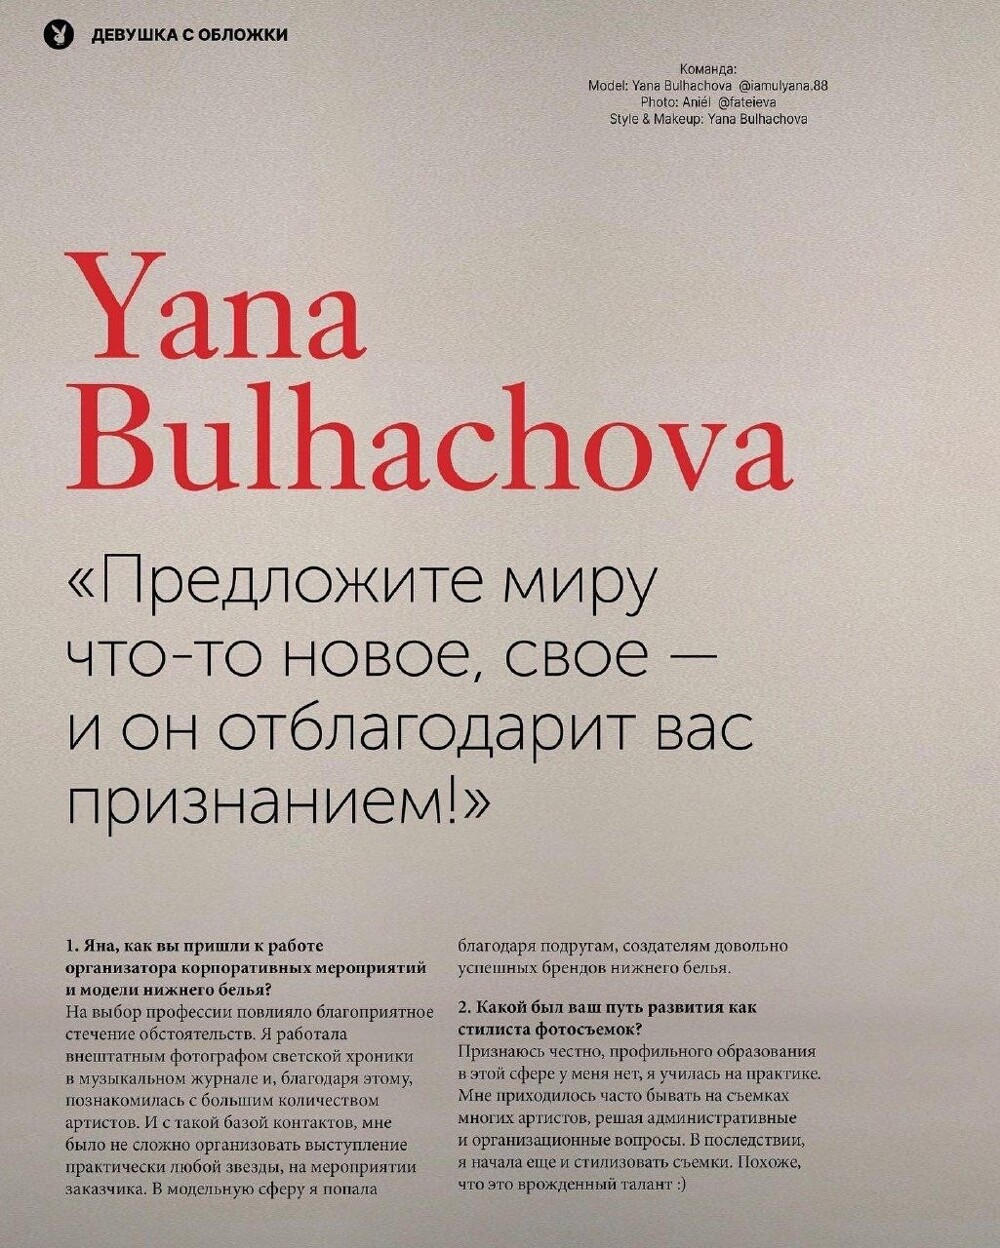 Головокружительная карьера: казахстанский журнал PLAYBOY поместил на обложку украинского трансгендера